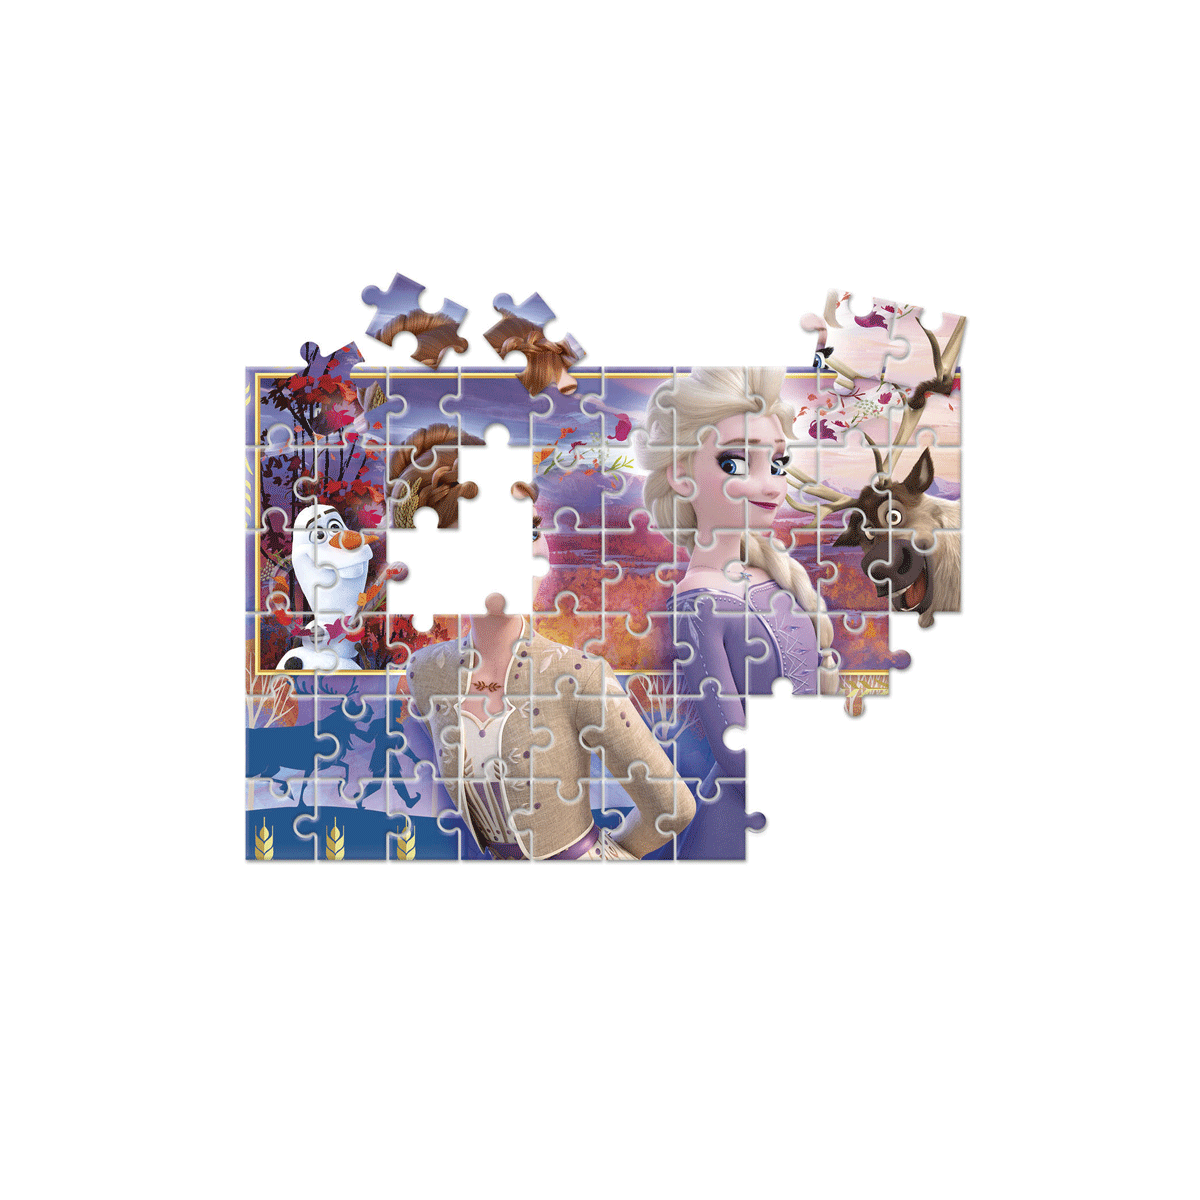 Clementoni supercolor puzzle disney frozen - 2x60 pezzi, puzzle bambini 4 anni - CLEMENTONI, DISNEY PRINCESS